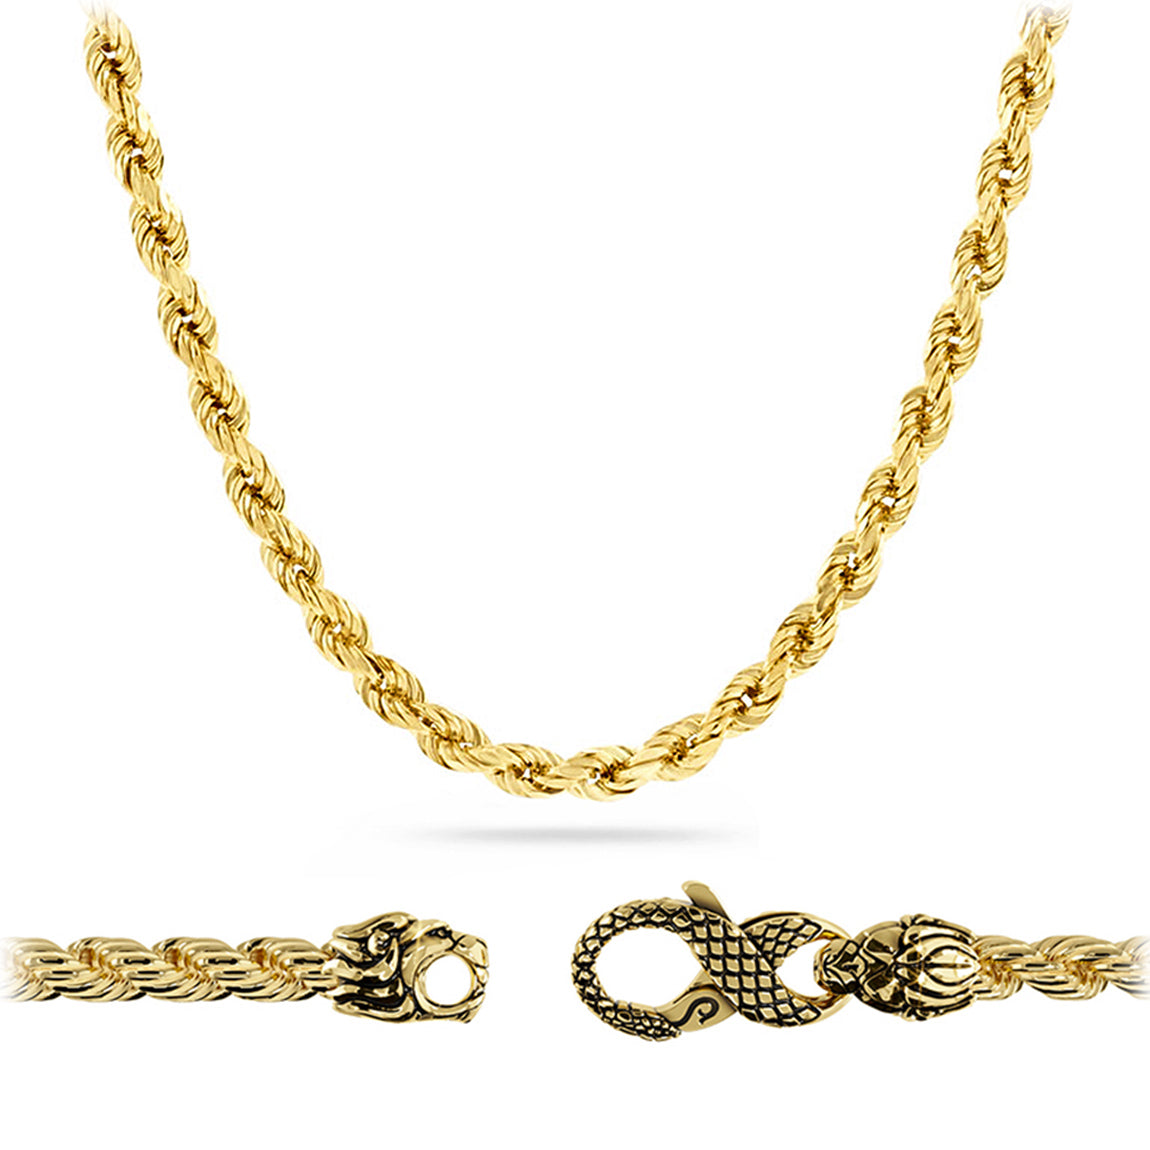 4mm Diamond Cut Rope Chain, 14K Yellow Gold, Proclamation Jewelry 22 / Lion & Snake